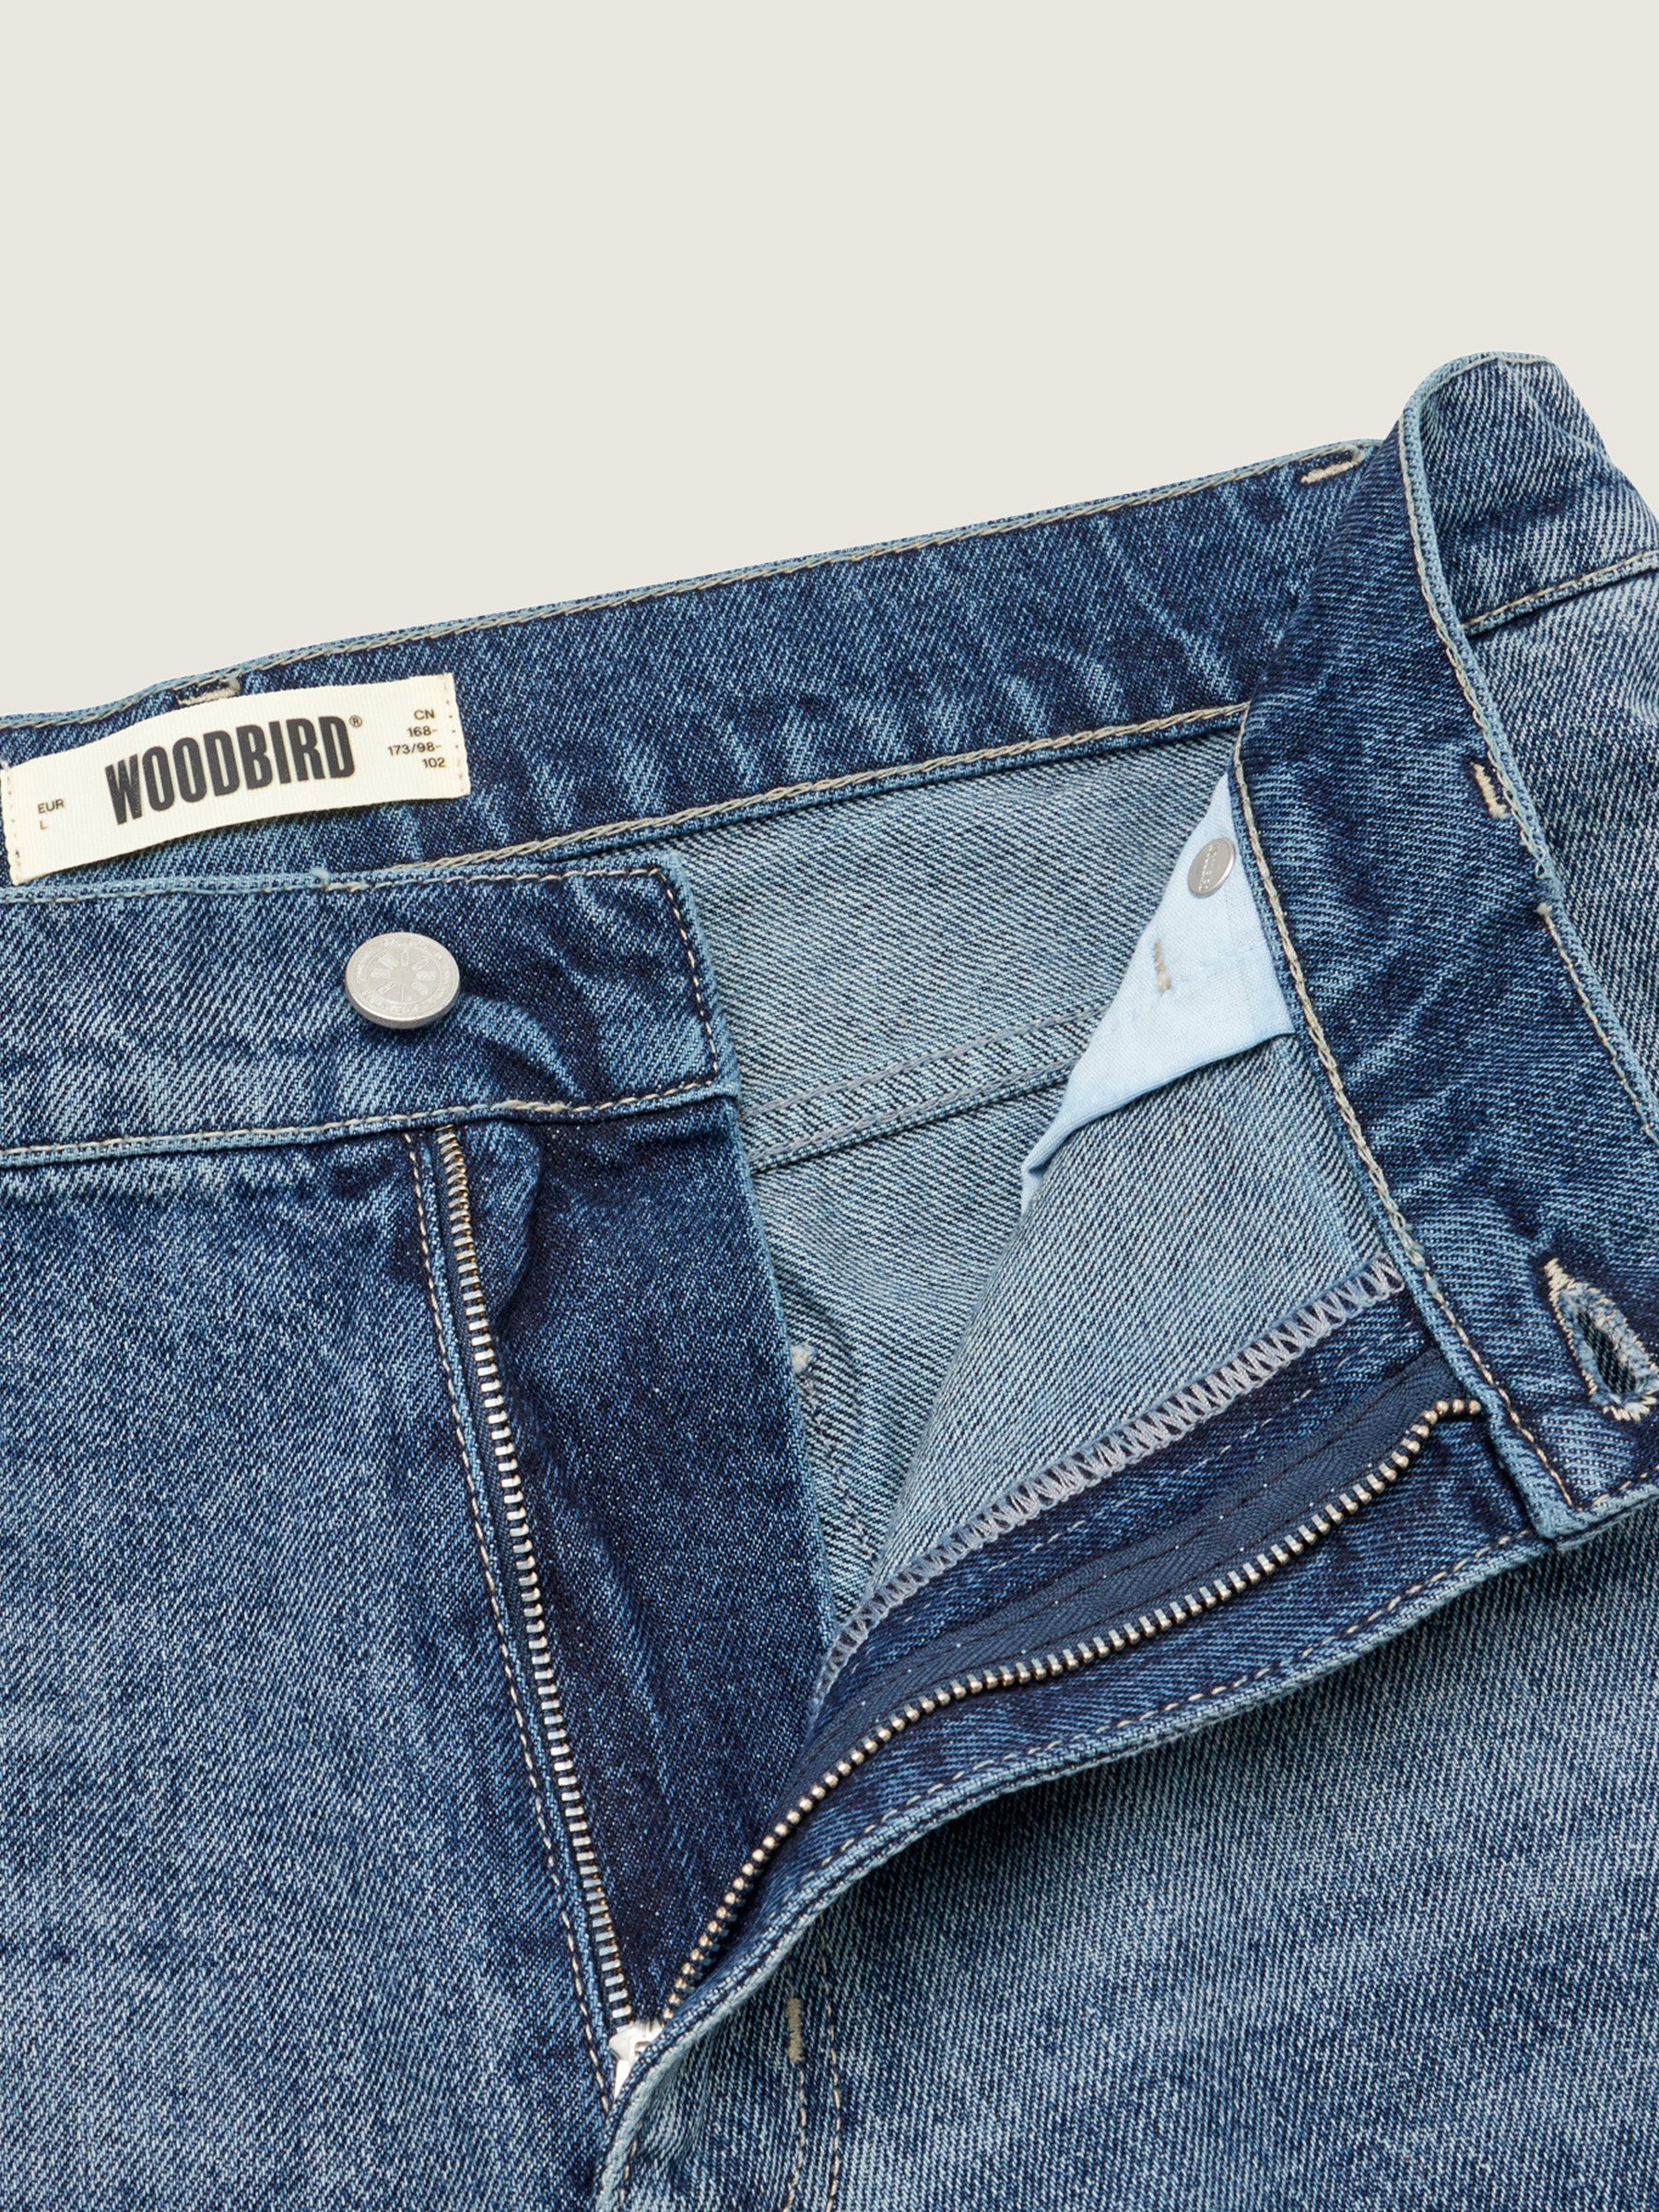 Woodbird WBLeroy Deep90s Jeans Jeans Washed Blue